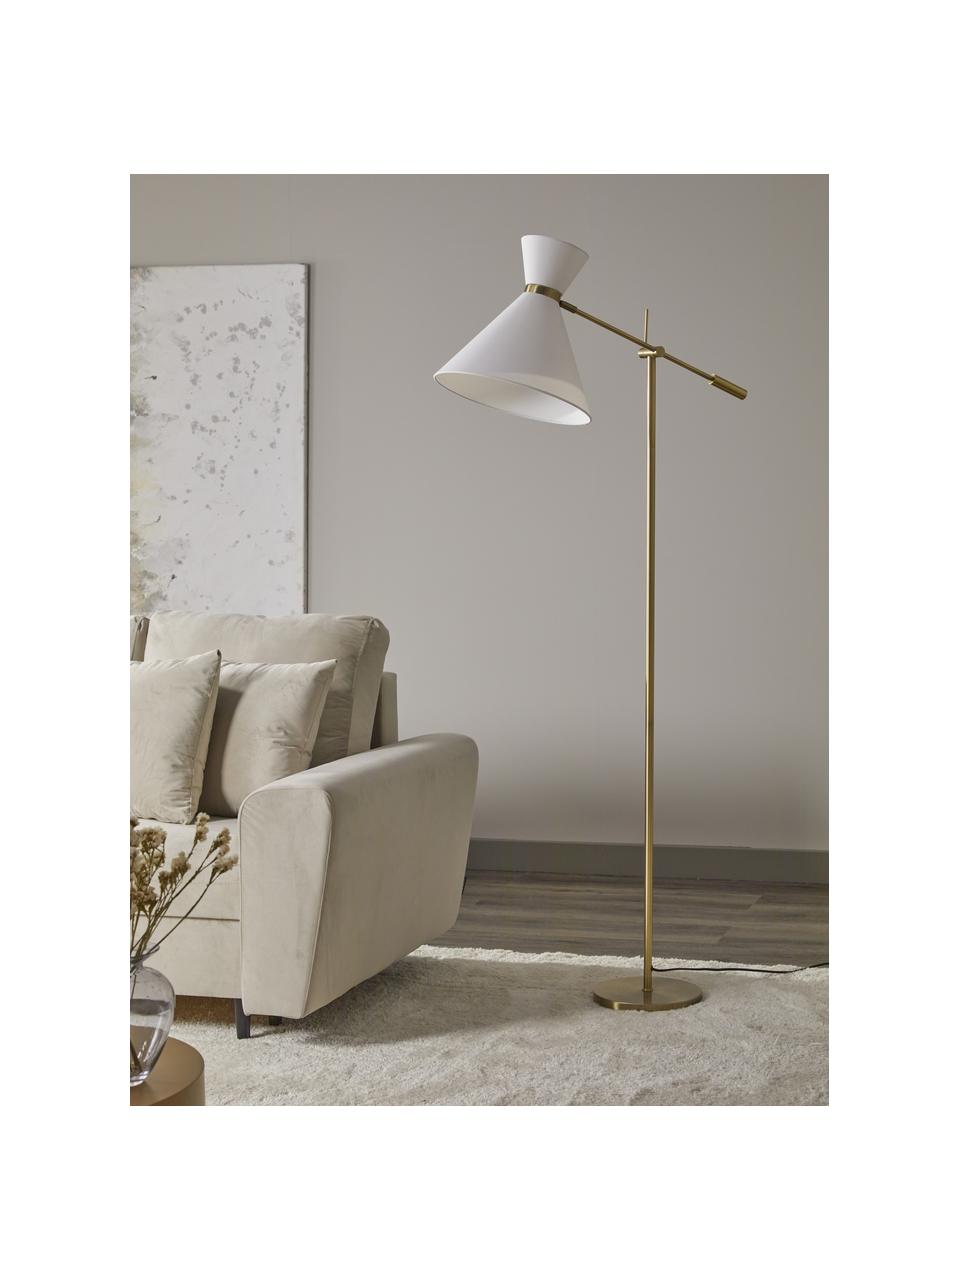 Lampa do czytania w stylu retro Audrey, Biały, złoty, S 79 x W 176 cm